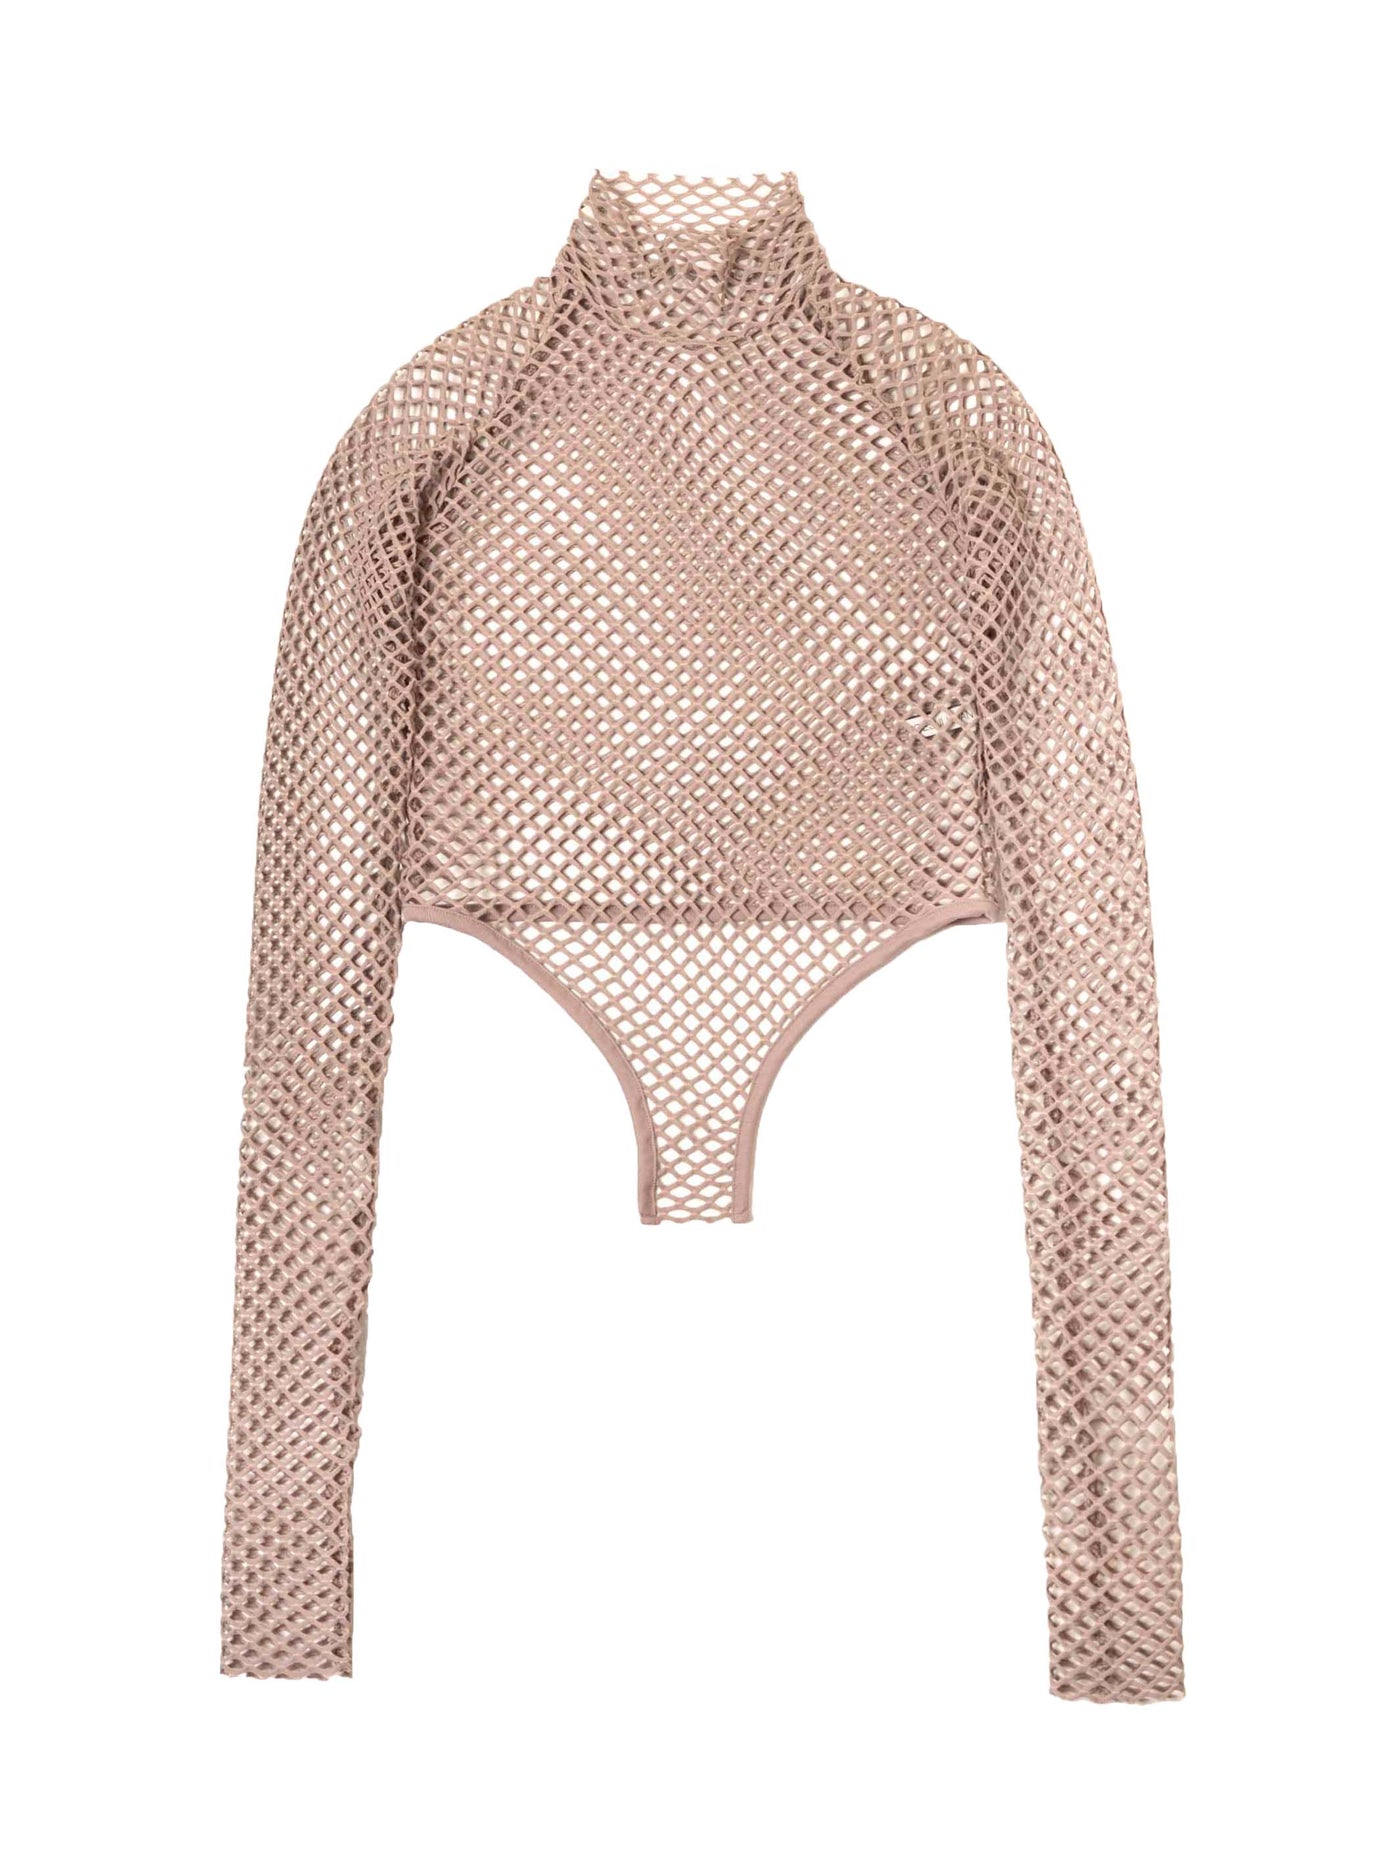 Fish net bodysuit hi-neck top